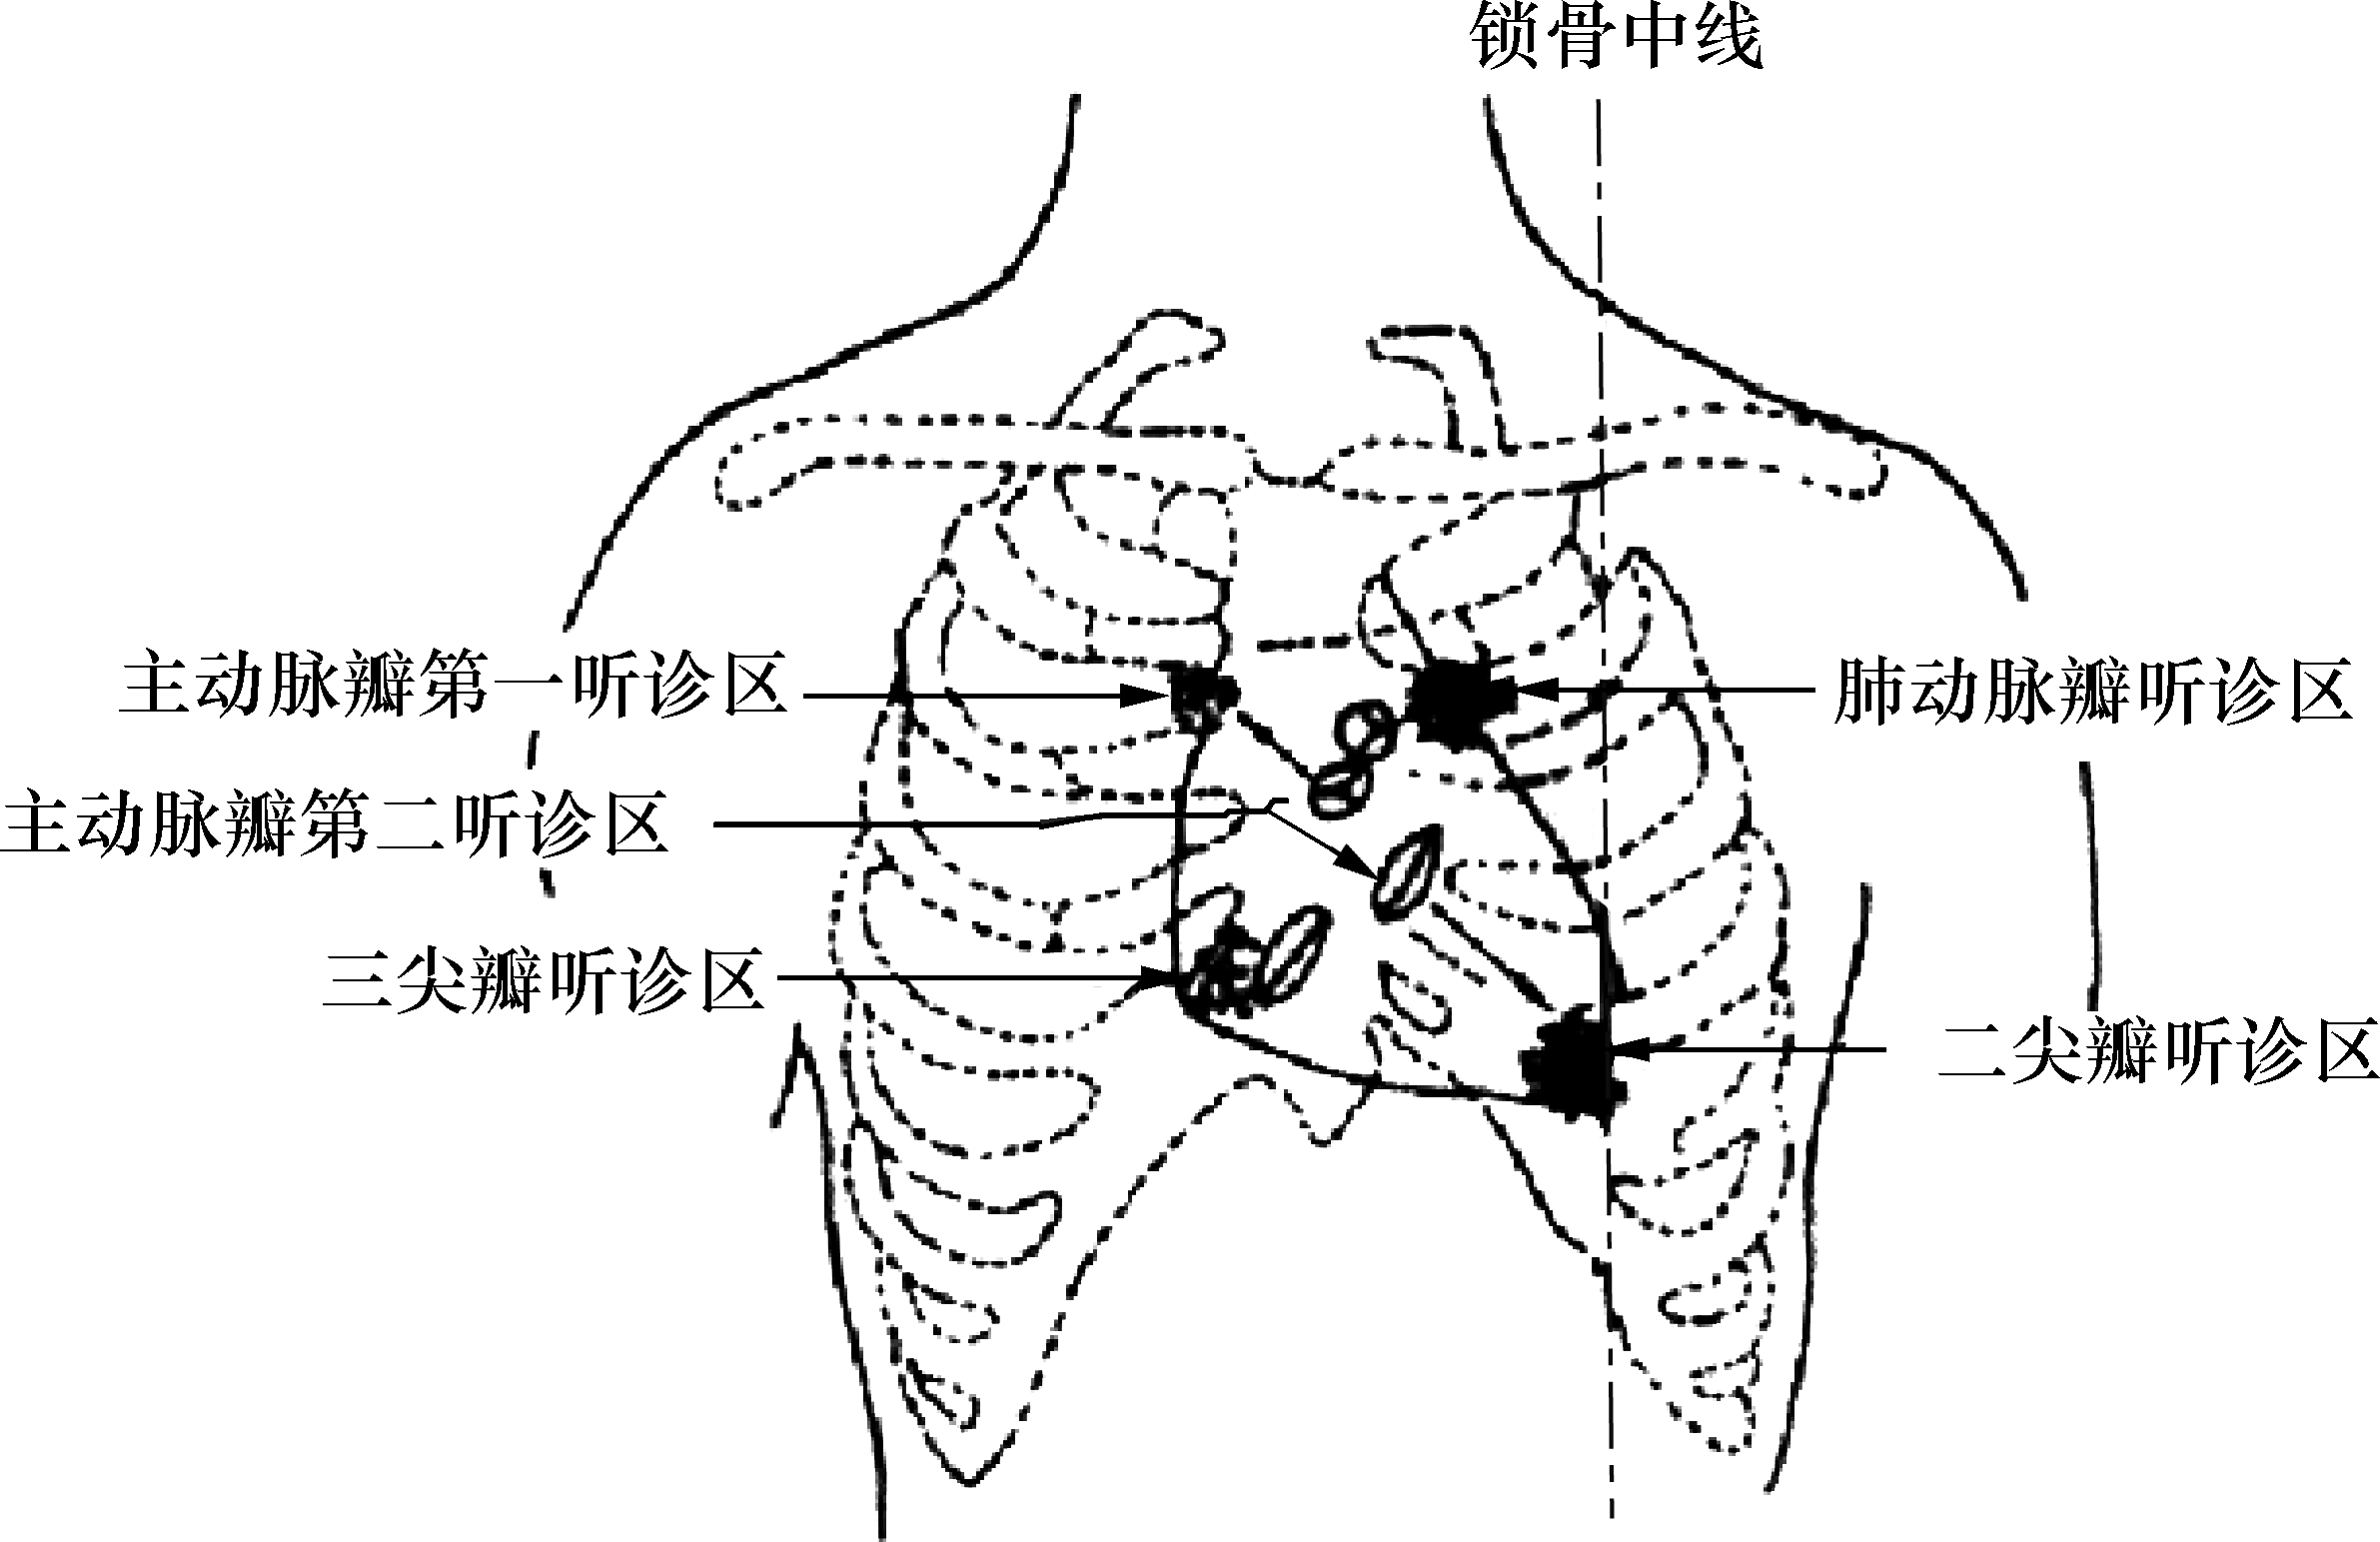 (3)确定听诊部位(图4-14):  二尖瓣听诊区:左第五肋间锁骨中线稍